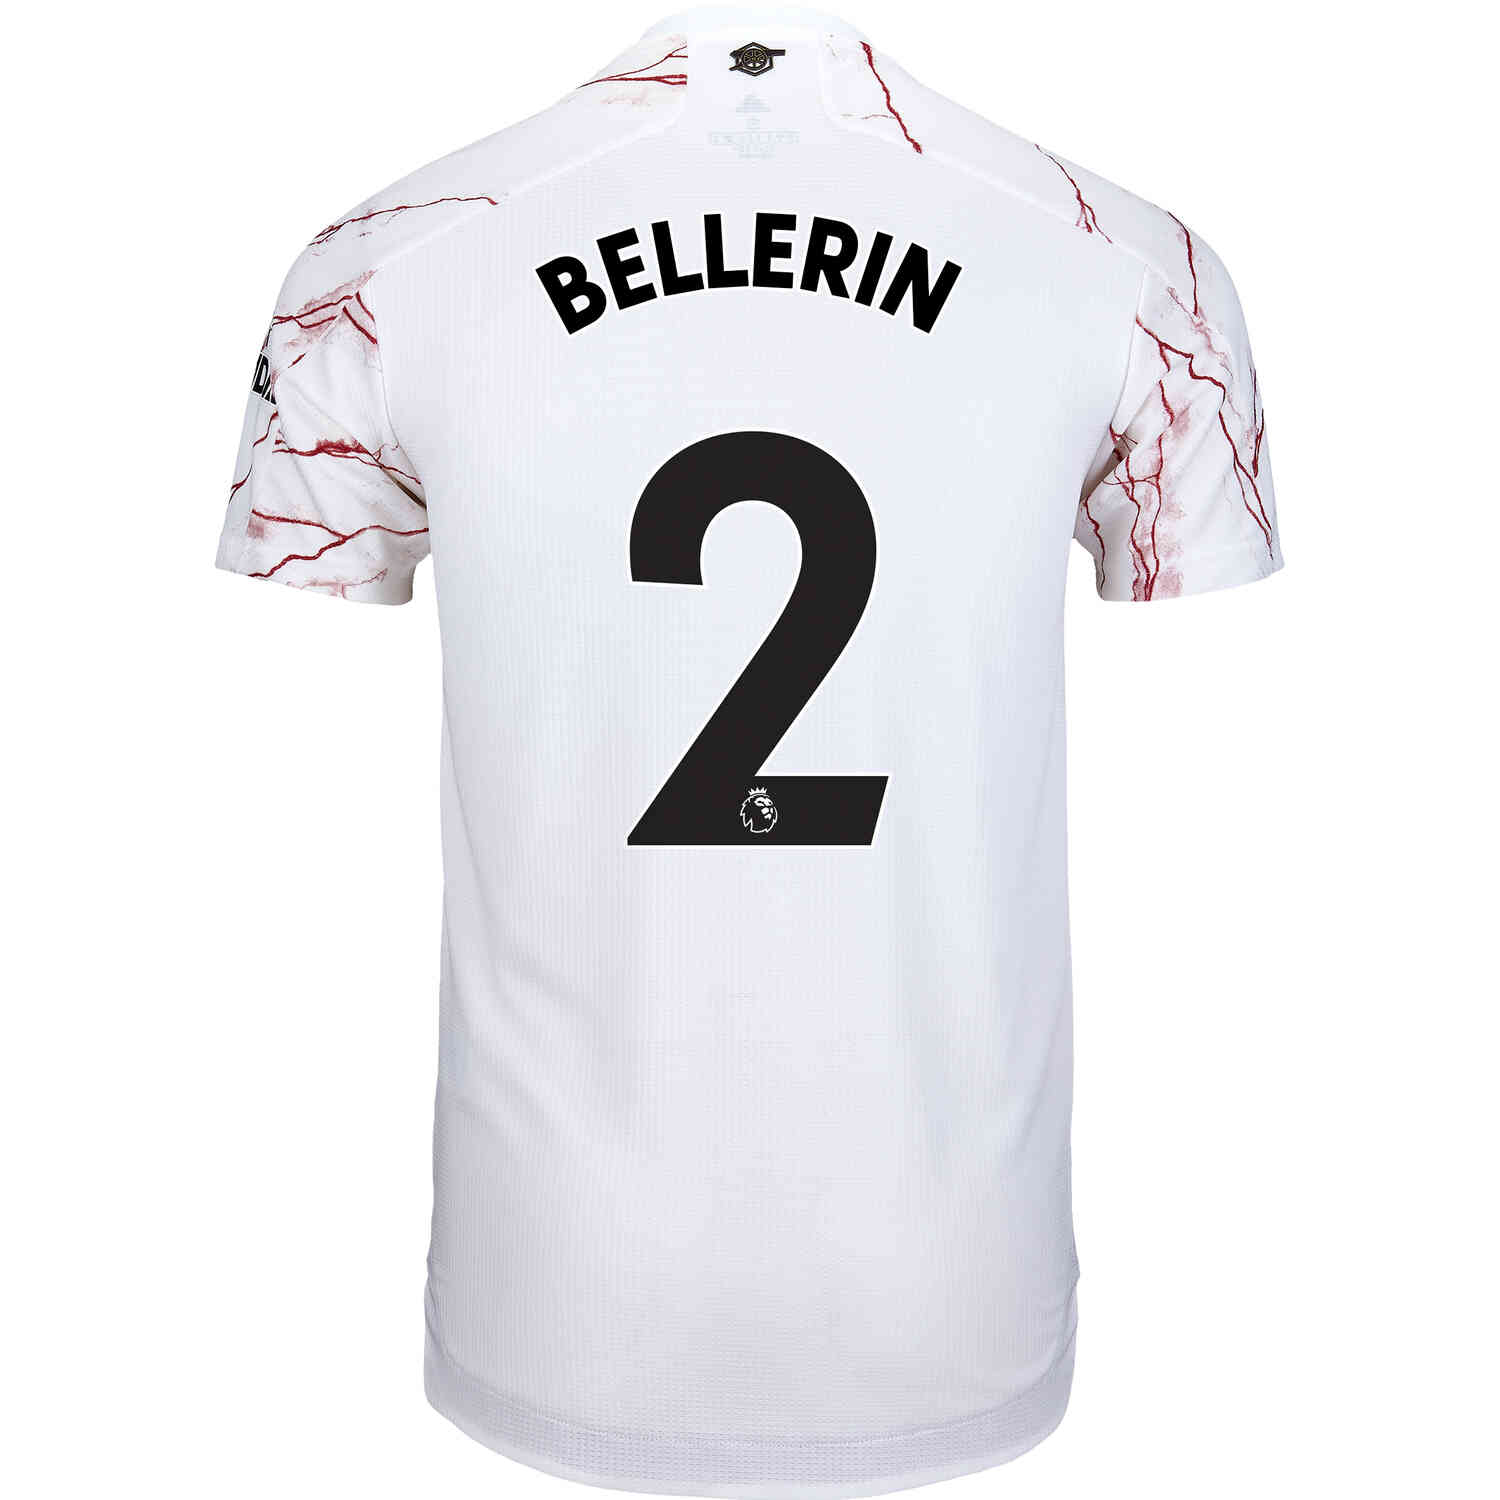 bellerin jersey number